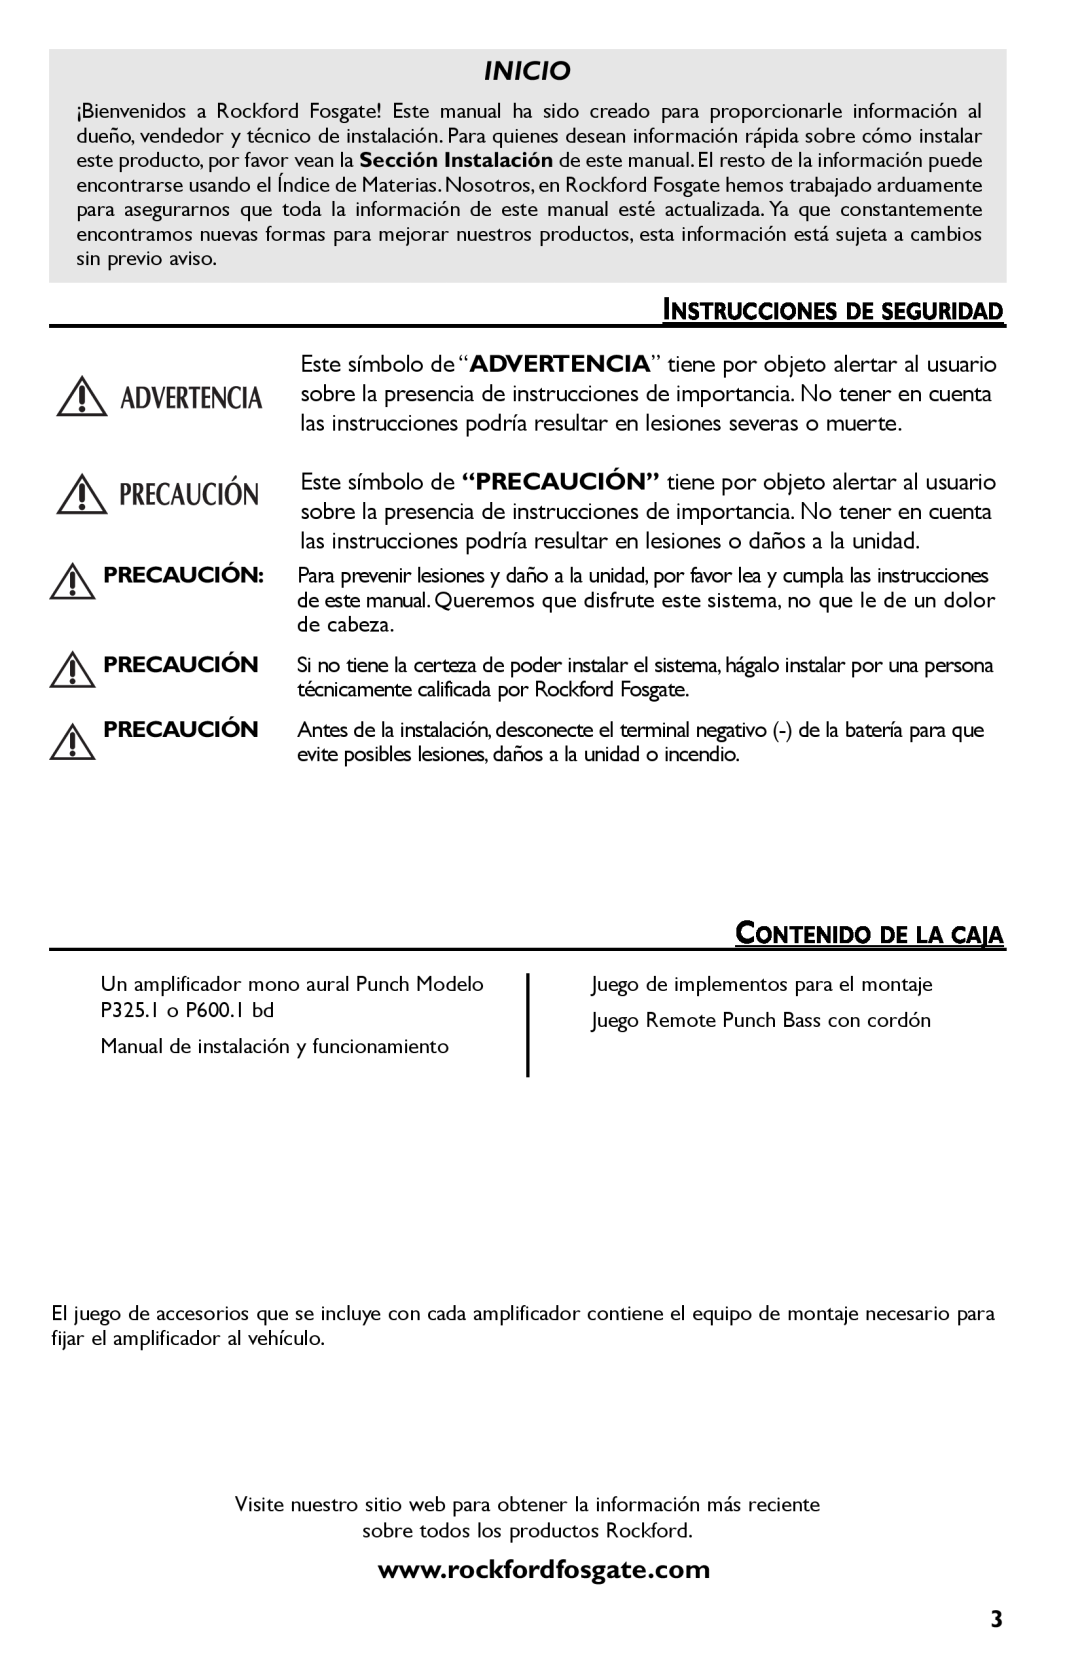 Rockford Fosgate P325.I, P600..I bd manual Inicio, Instrucciones De Seguridad, Contenido De La Caja 